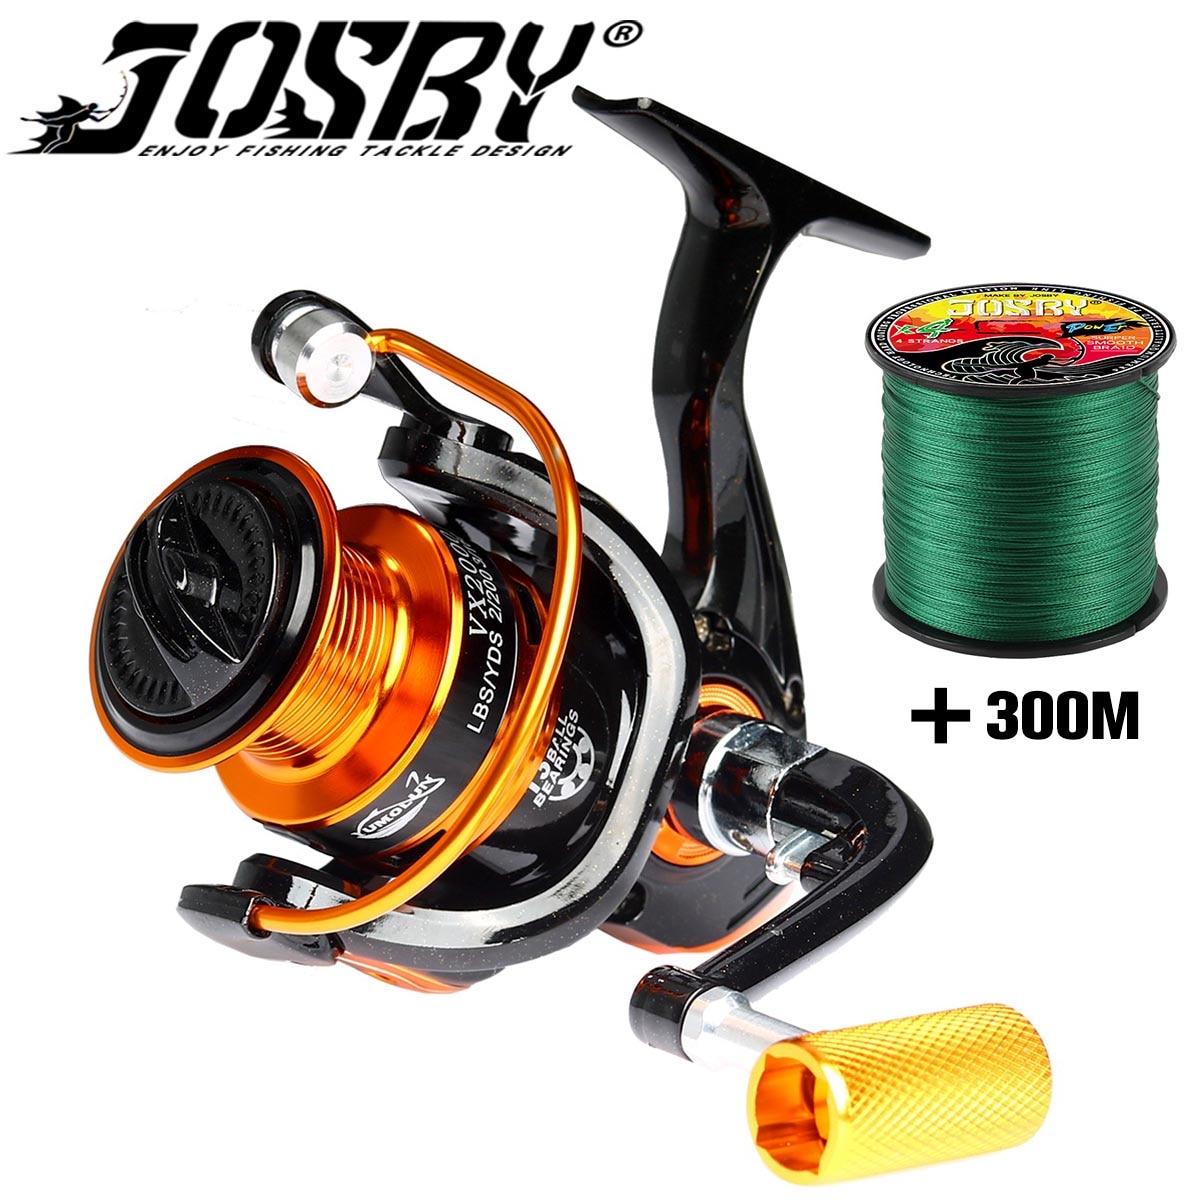 JOSBY-carrete de Pesca serie 13 BB, accesorios de Metal, rueda giratoria para Pesca de carpa, agua salada, 1000 ~ 7000